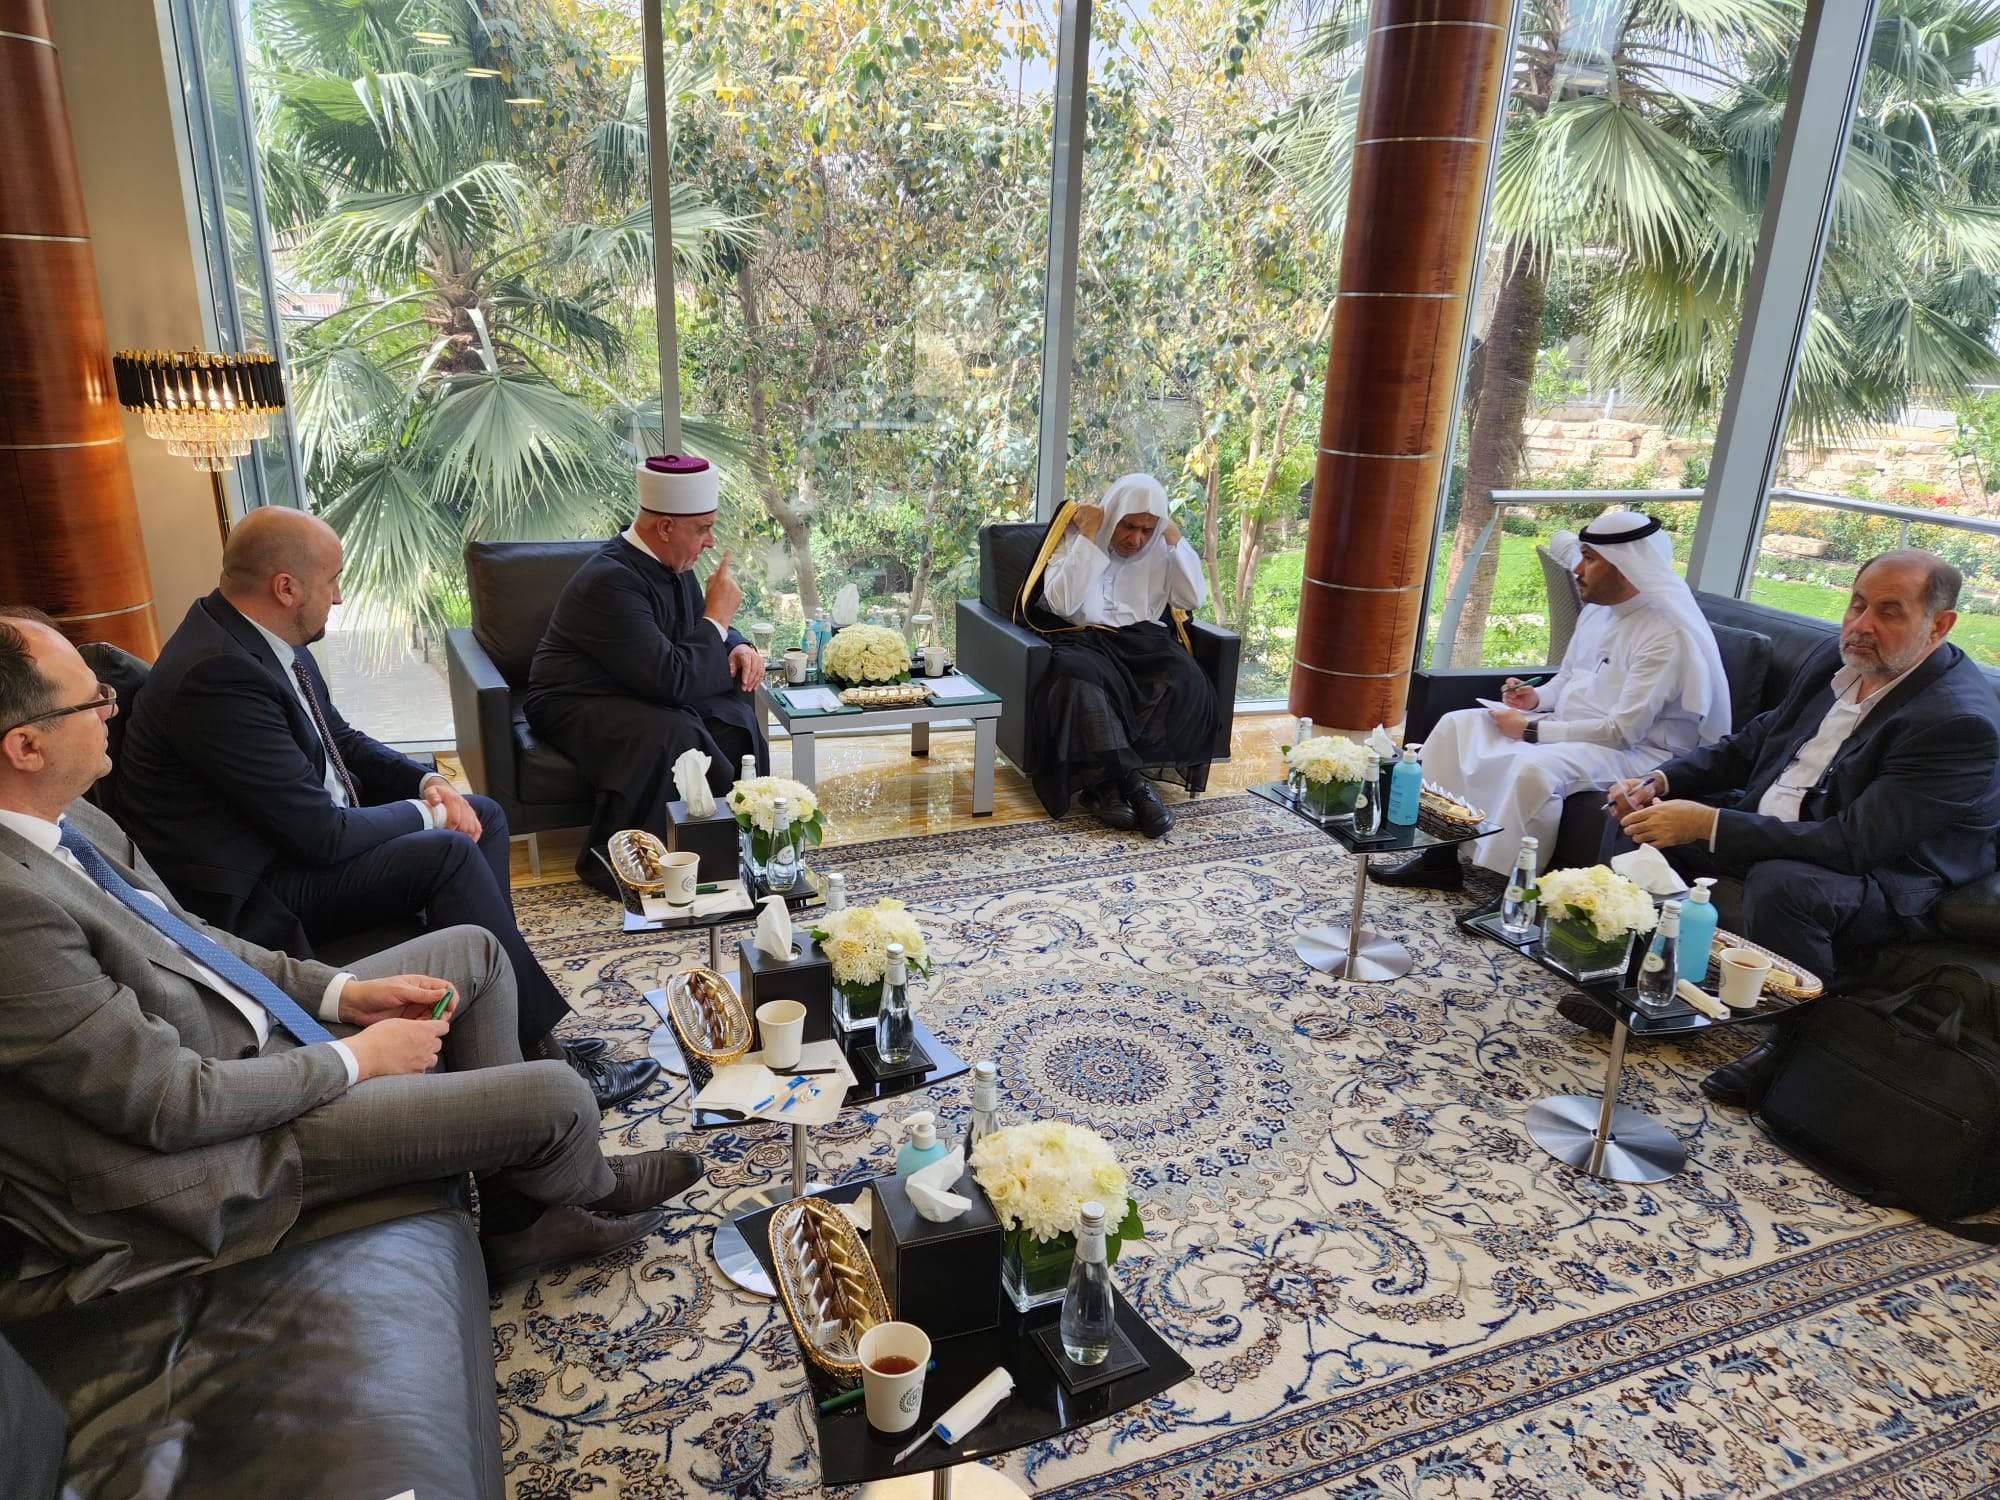 Reisul-ulema - Al Isaa 2.jpg - Rijad: Reisul-ulema posjetio generalnog sekretara Lige muslimanskog svijeta